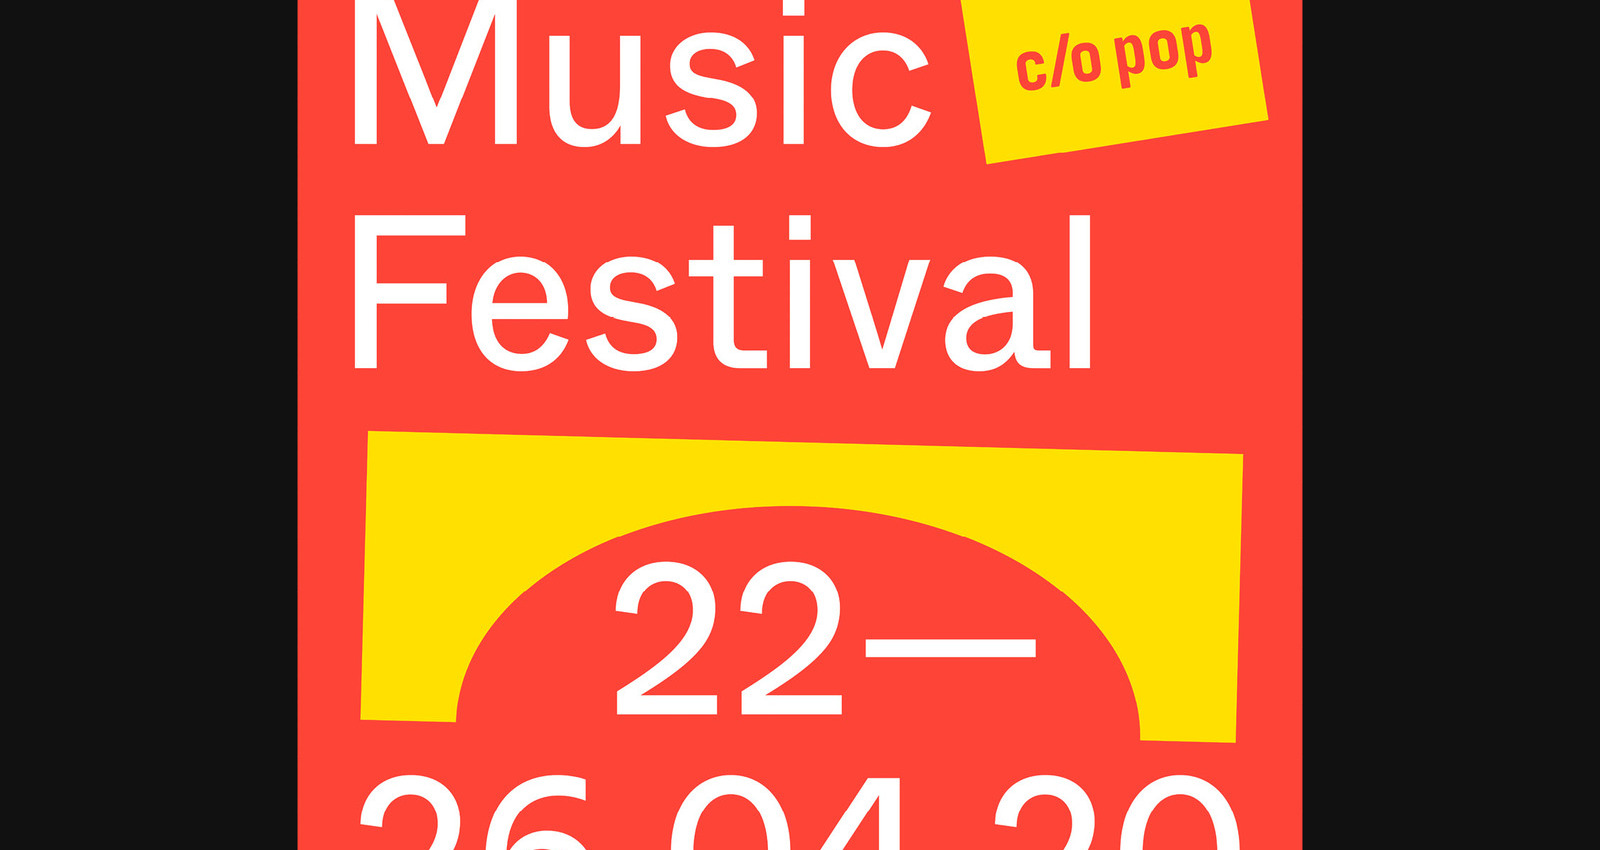 c/o pop Festival 2020